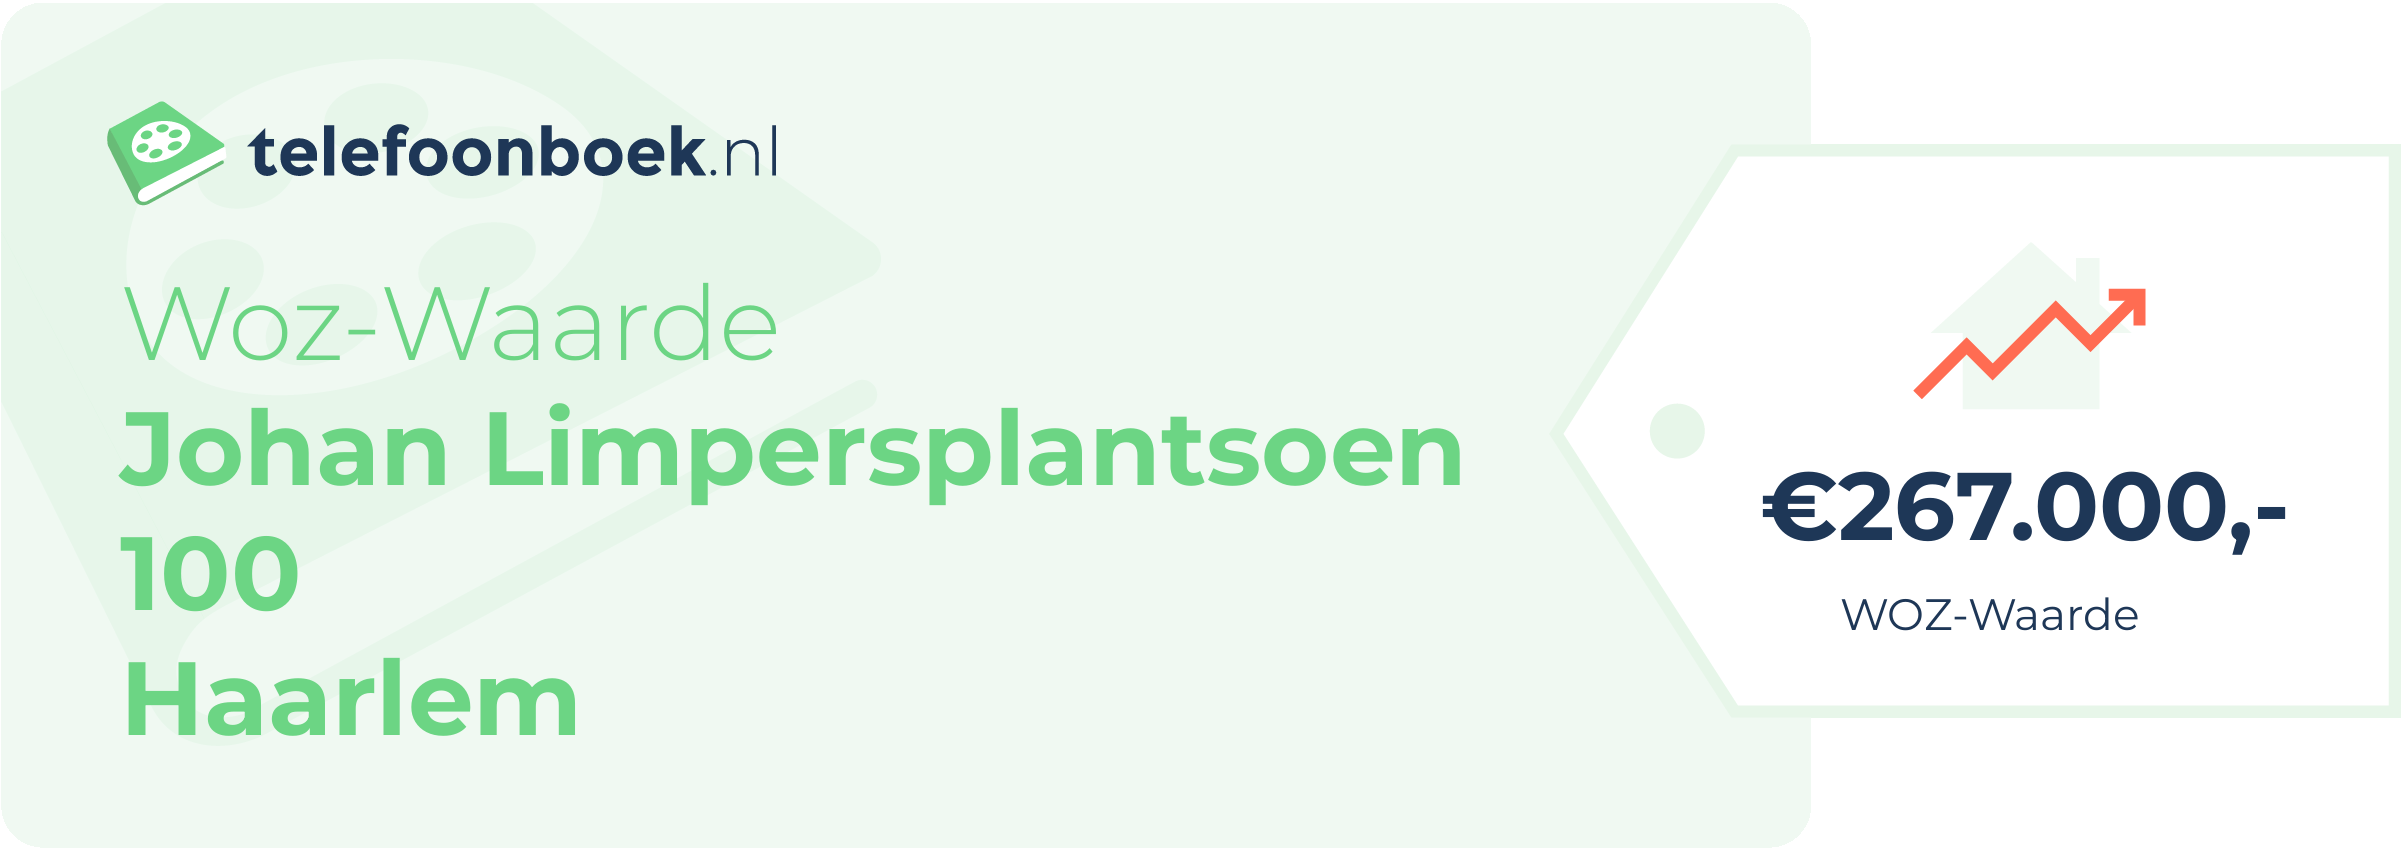 WOZ-waarde Johan Limpersplantsoen 100 Haarlem